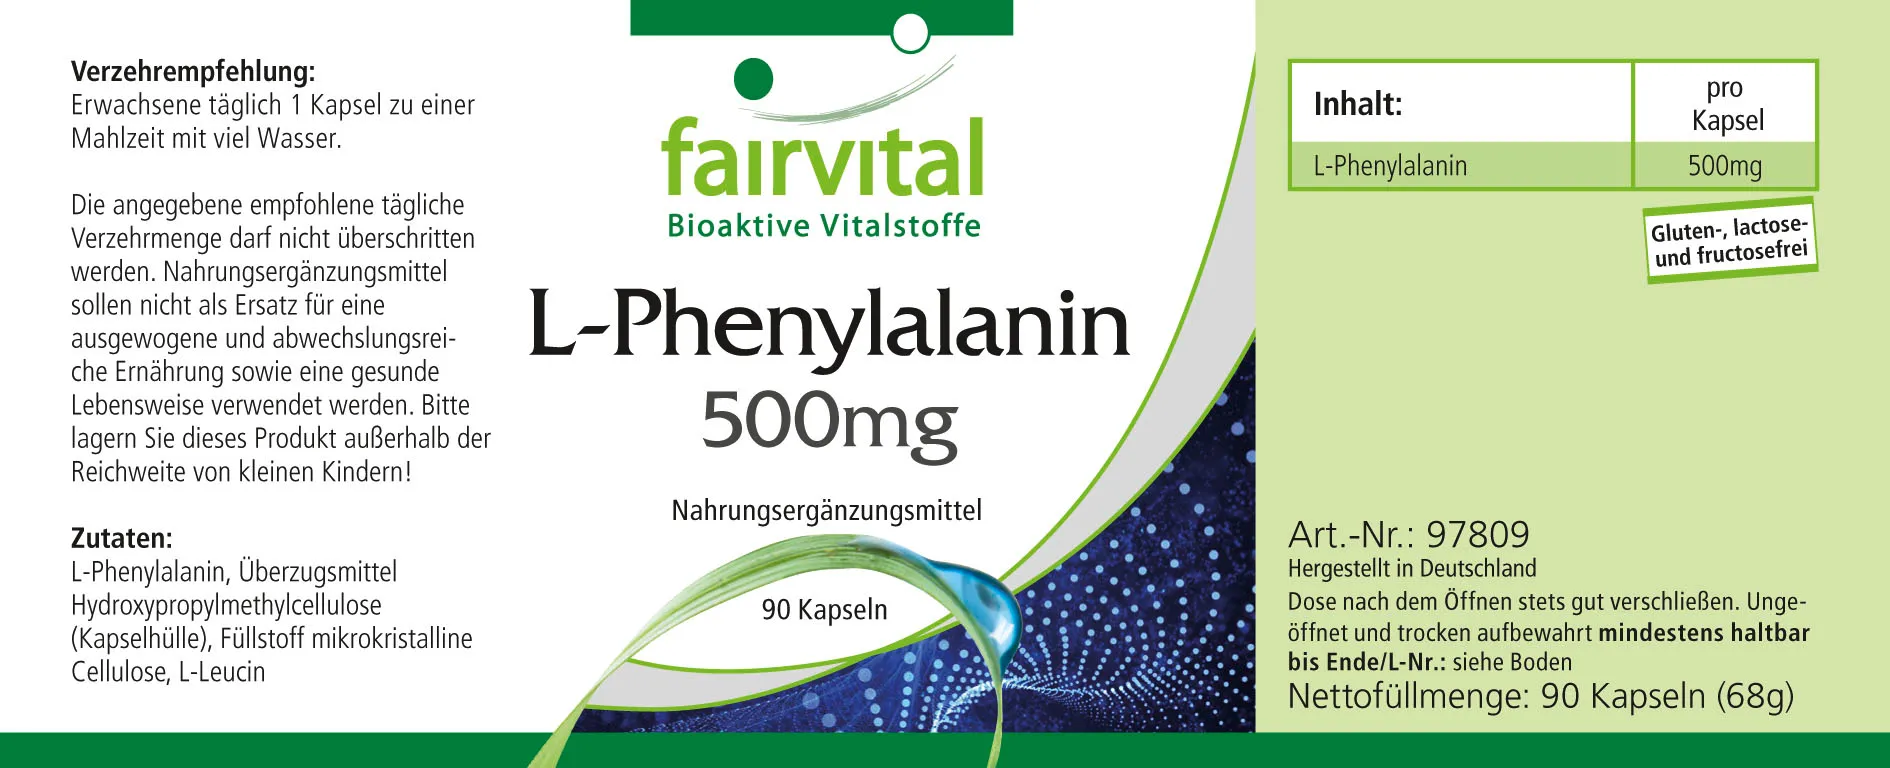 L-Phenylalanin 500mg